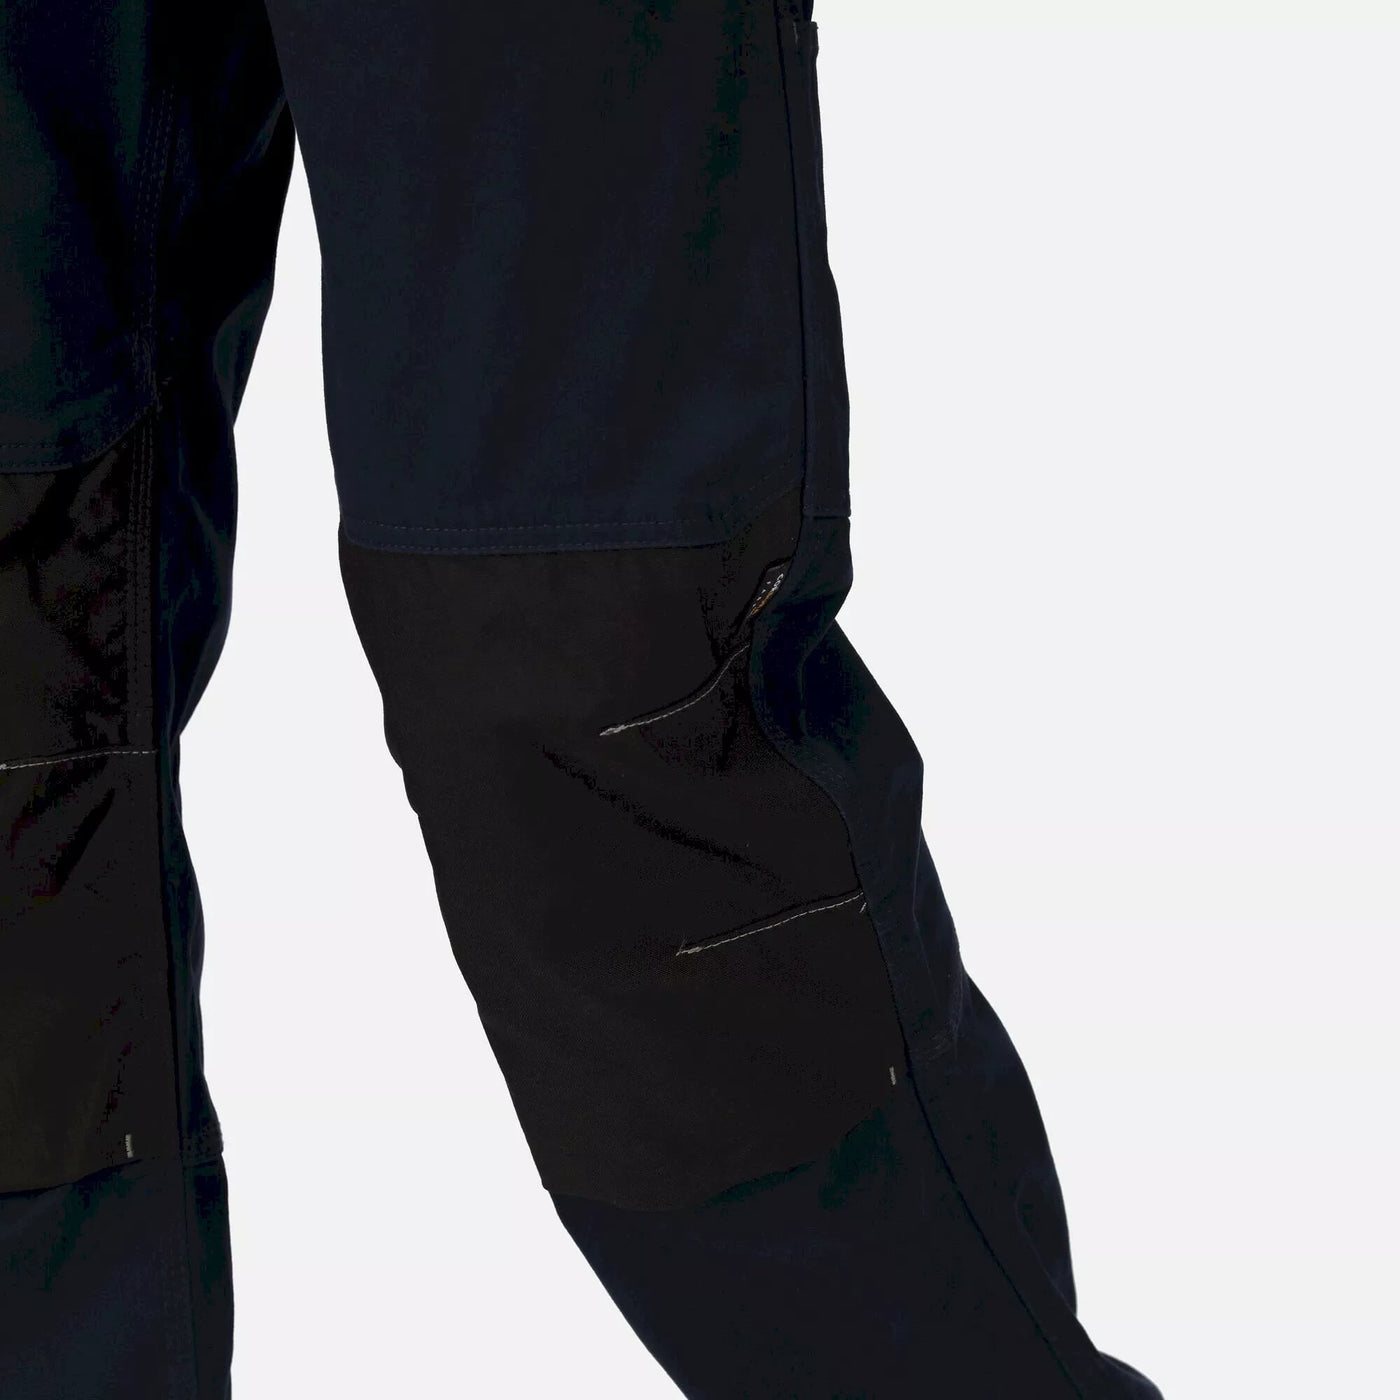 Regatta Scandal Stretch Trousers, Navy, 31" Leg Length